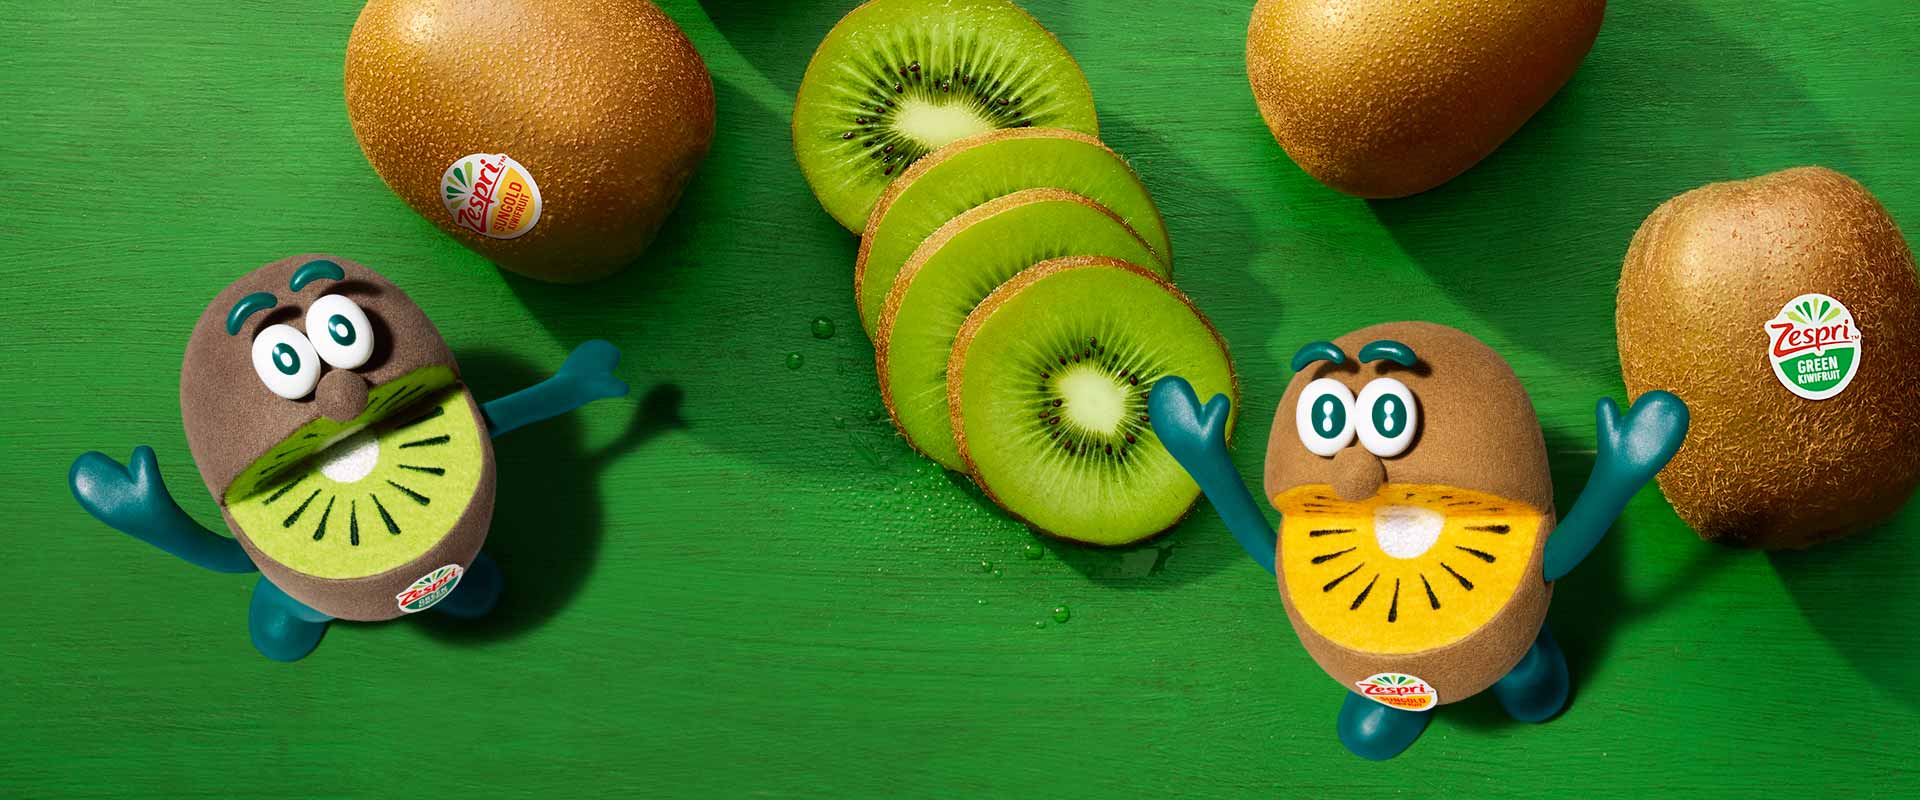 Combien de calories et de glucides contient un kiwi ? - Header